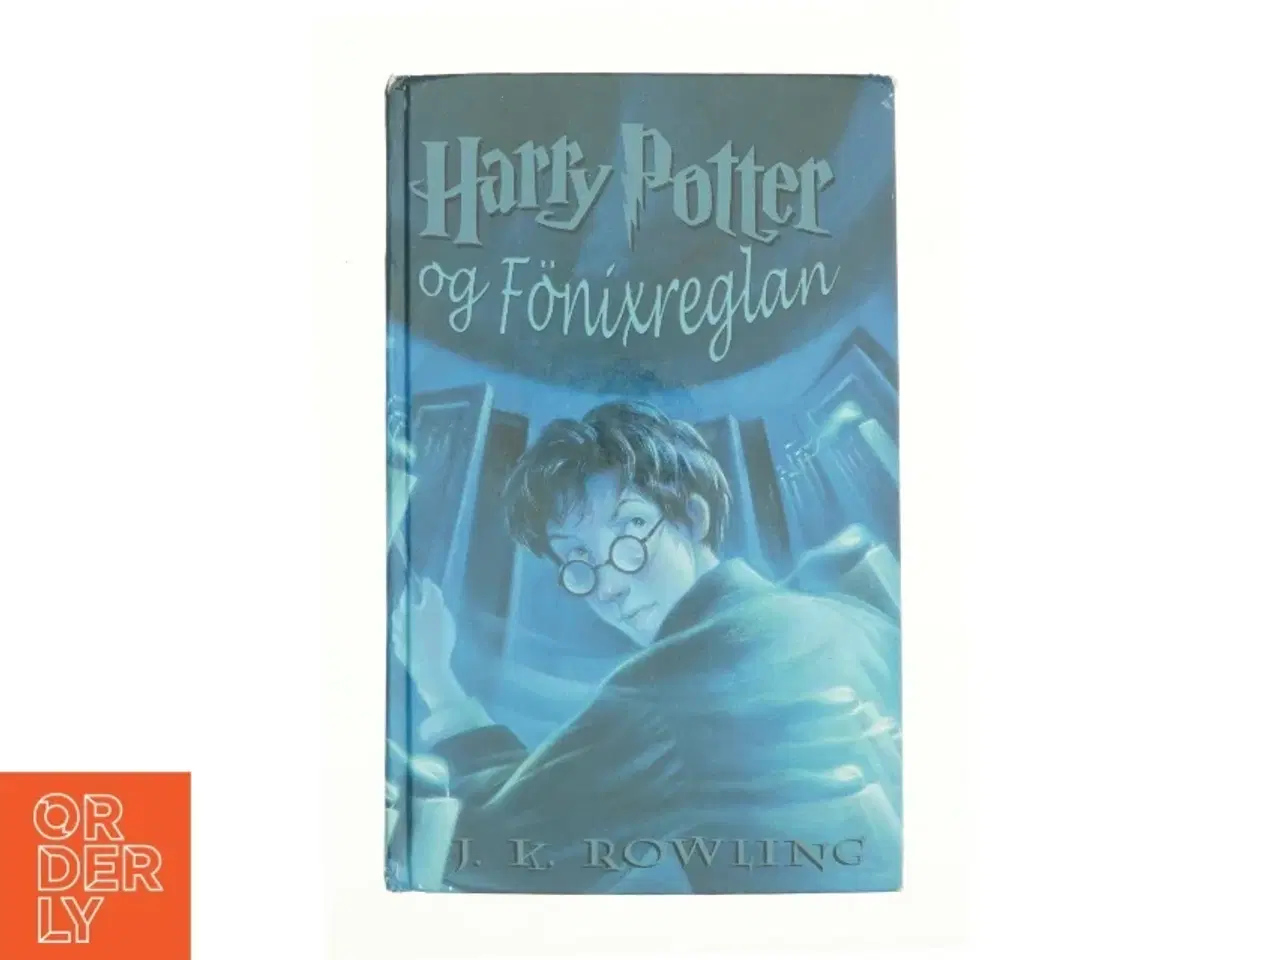 Billede 1 - Harry Potter og Fönixreglan af J. K. Rowling (Bog)